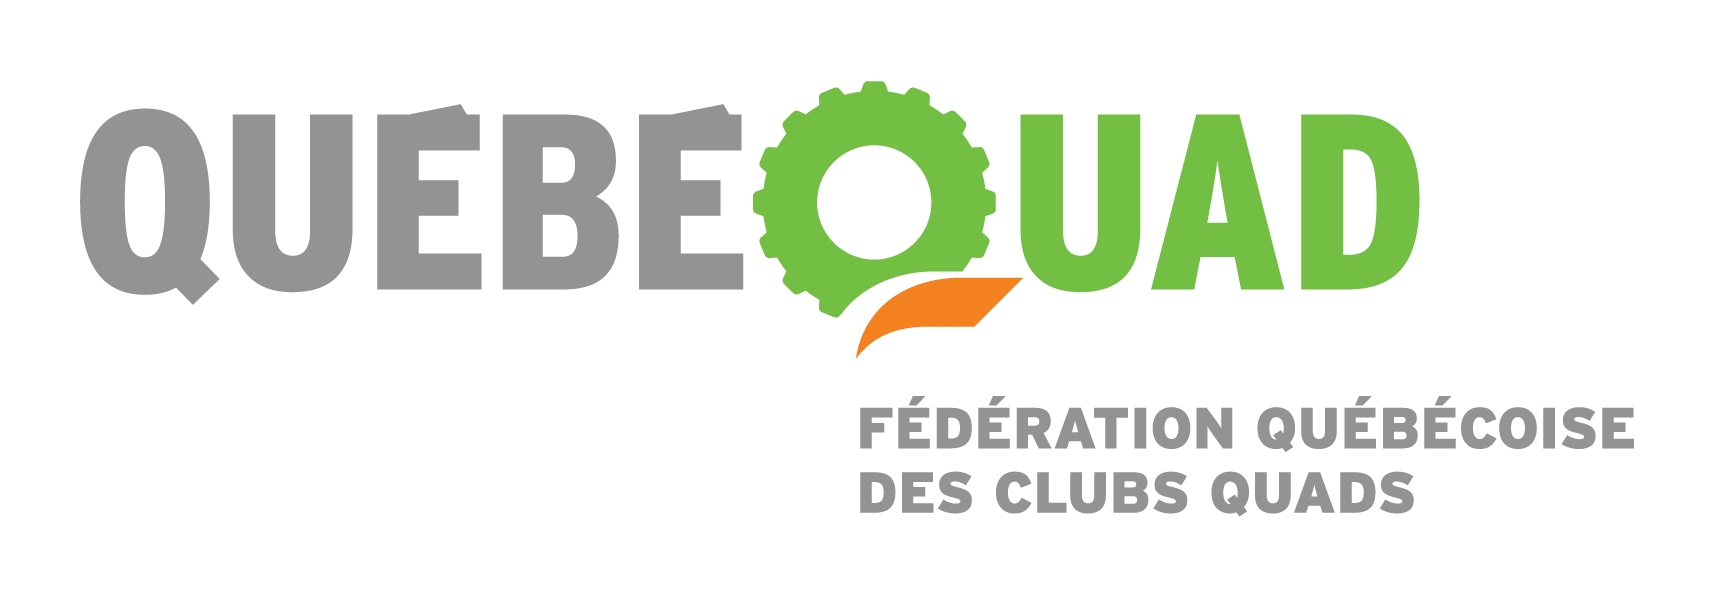 Episode 9 The complete adventure - Fédération québécoise des clubs quads